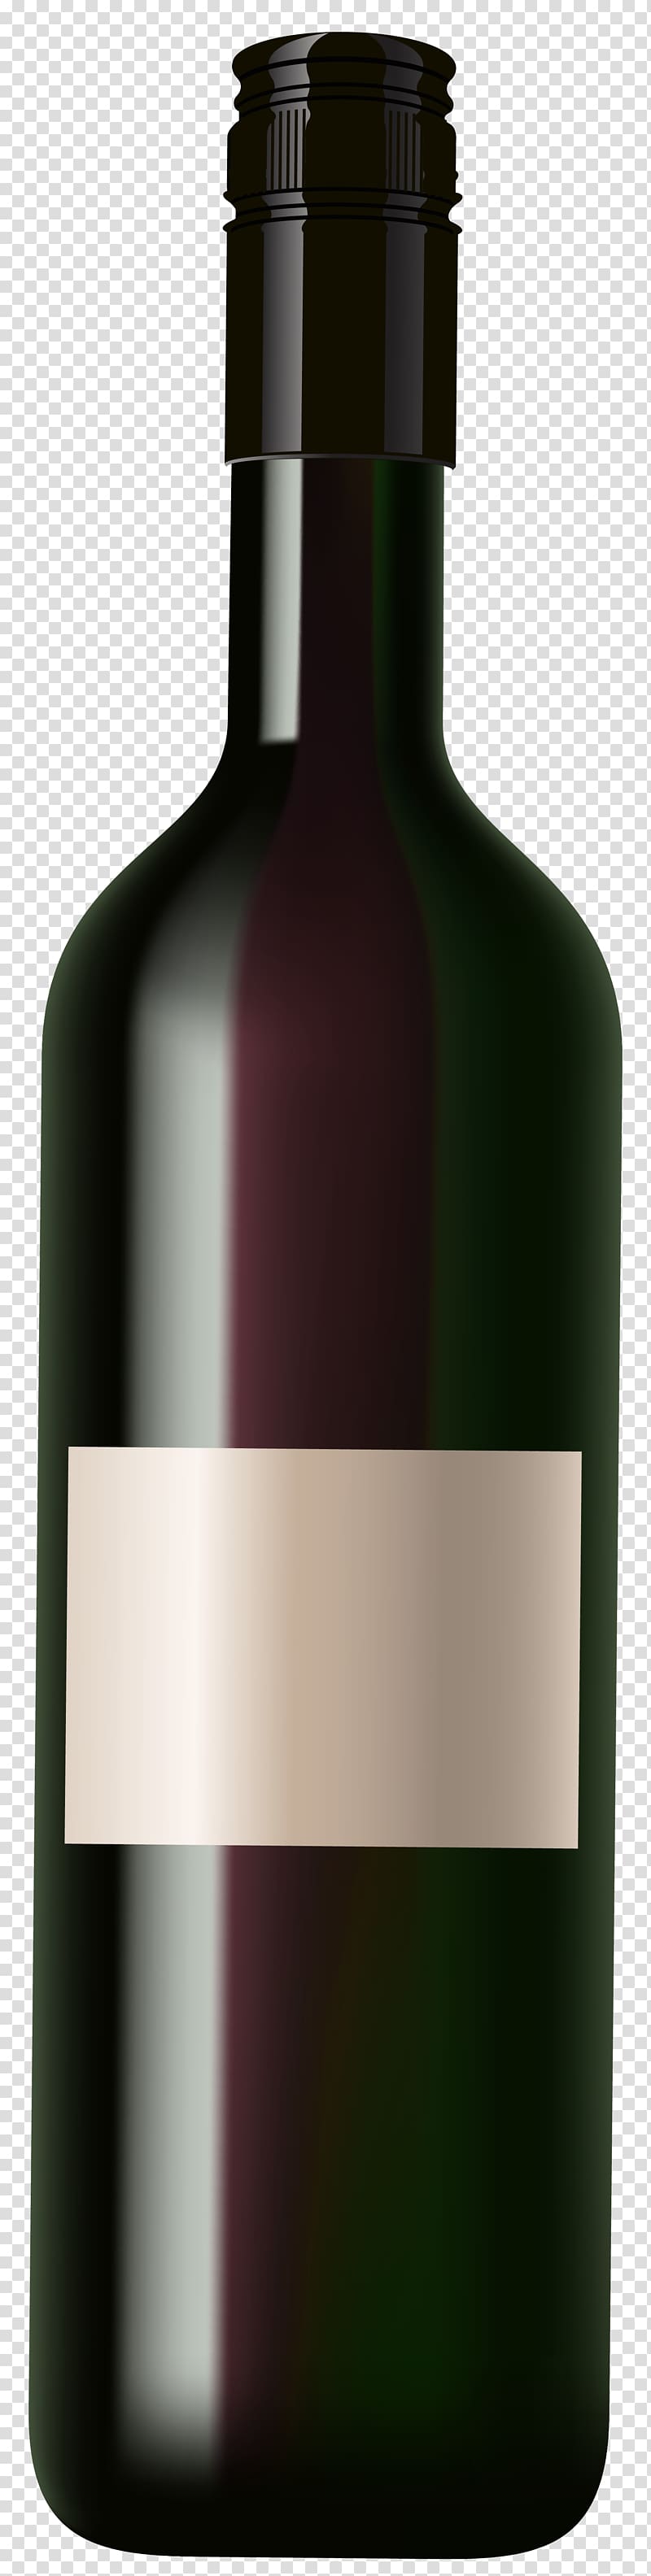 black liquor bottle illustration, Red Wine Beer Champagne, Wine Bottle transparent background PNG clipart